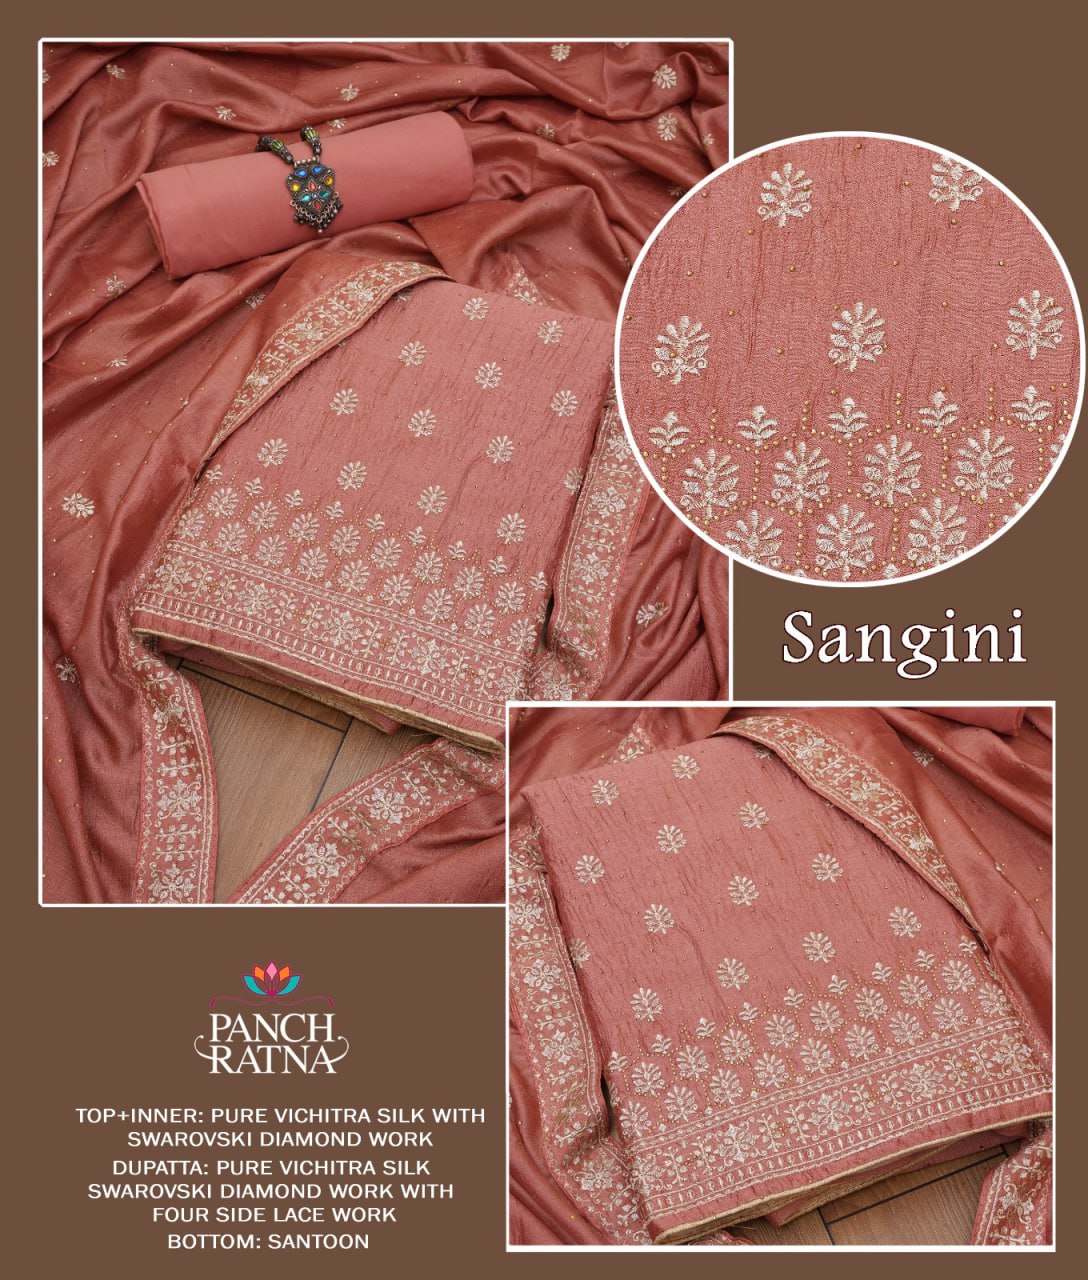 Sangini Panch Ratna Vichitra Silk Salwar Suits